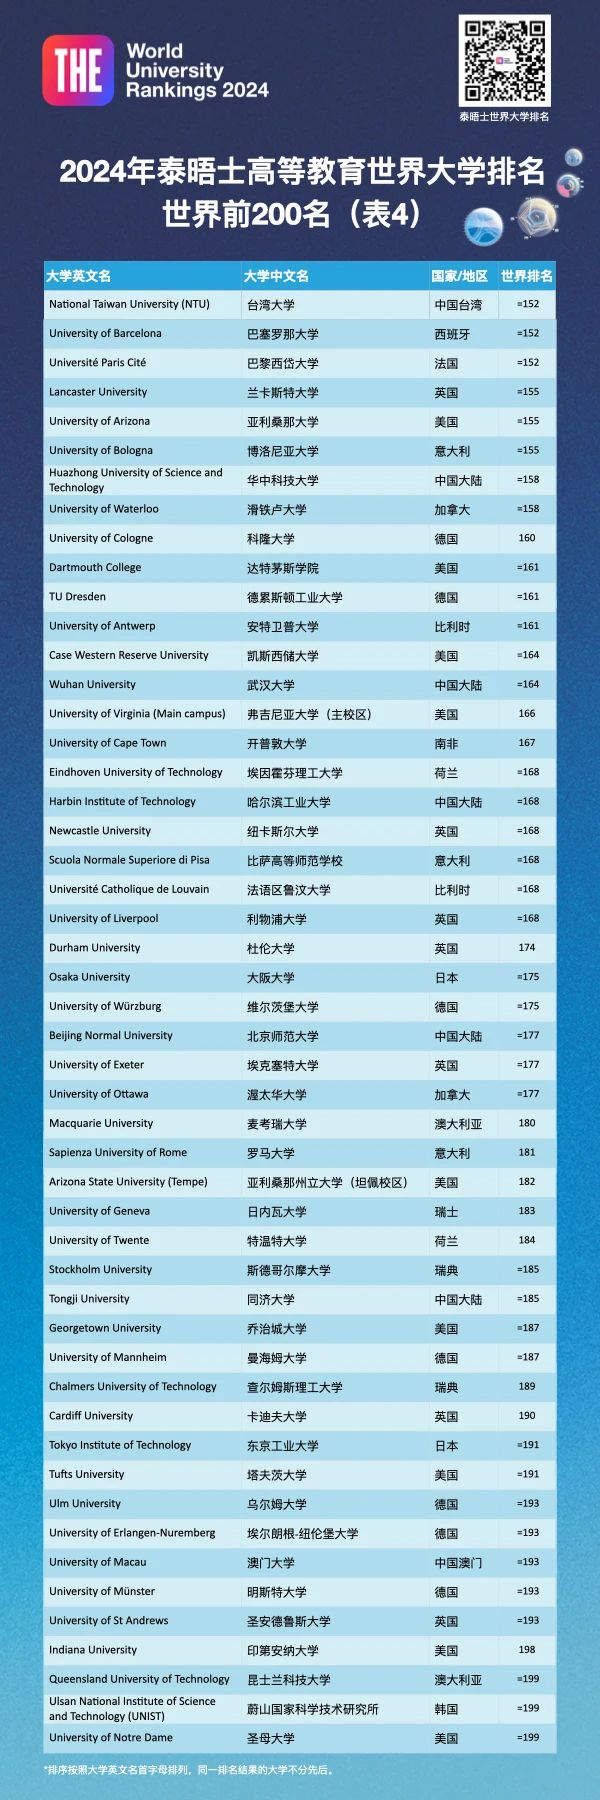 2024年泰晤士(THE)世界大学排名 | 欧亚大学排名大洗牌